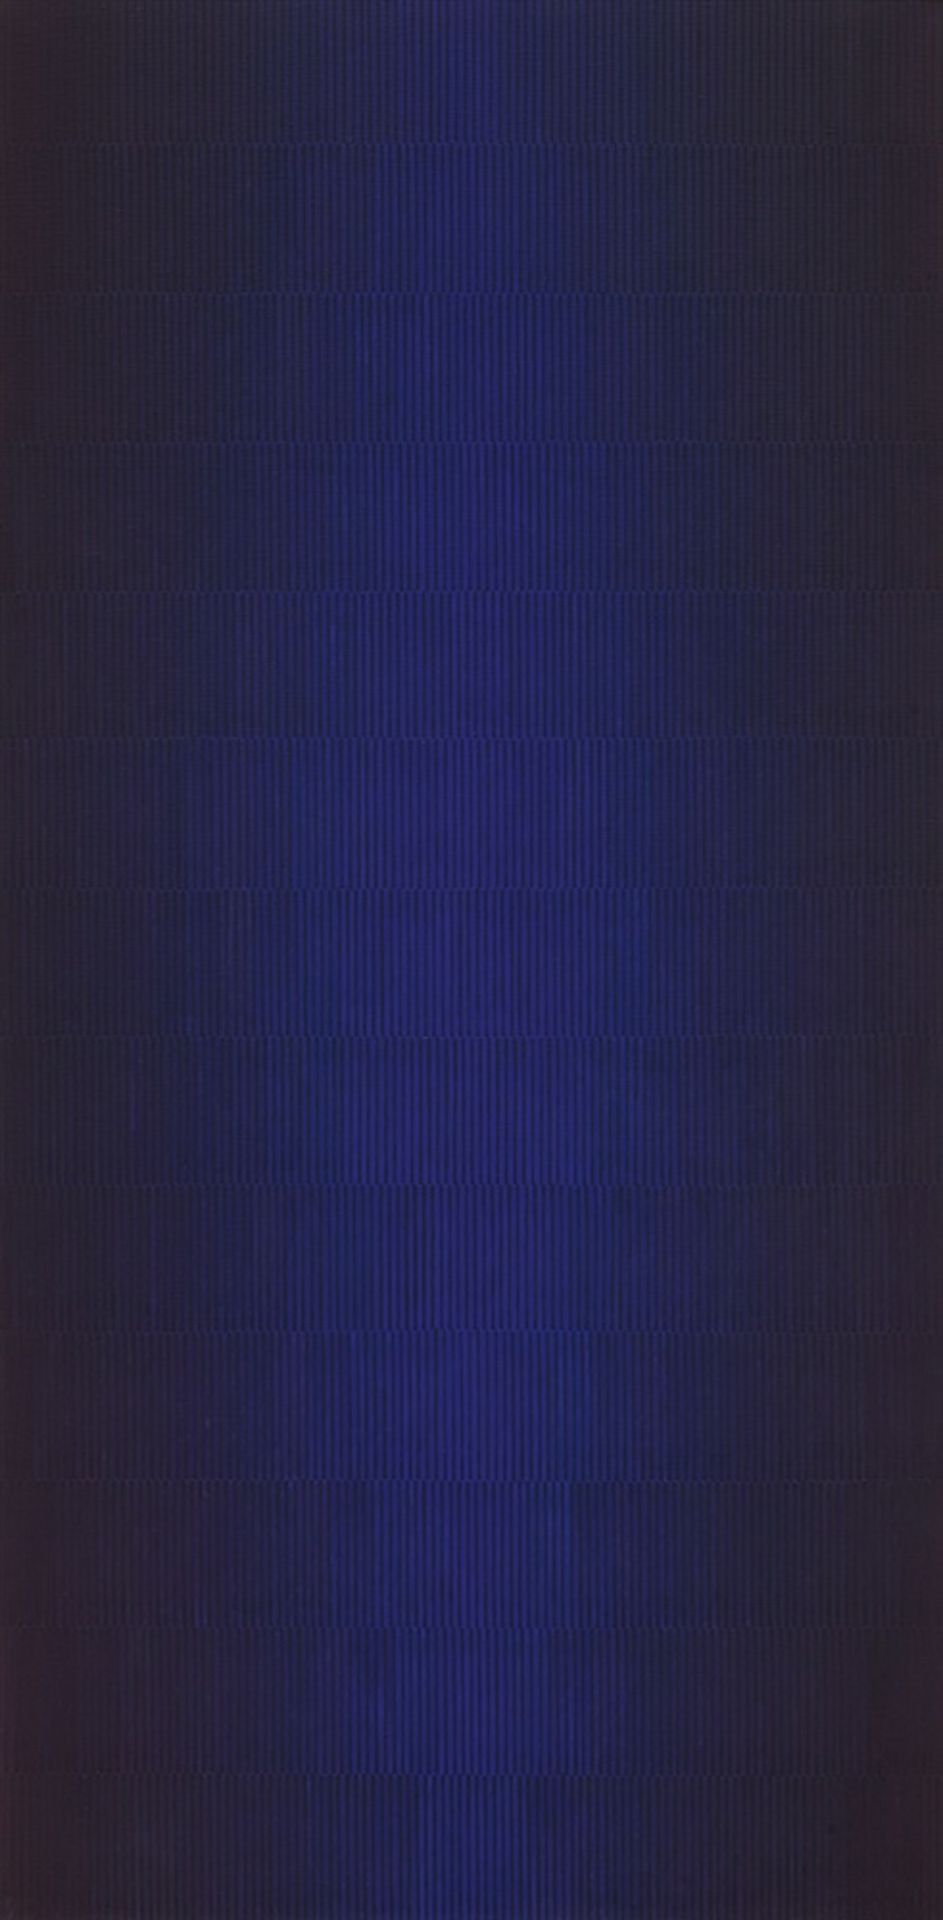 Johannes GeccelliBlauscheinAcryl auf Leinwand 200 x 100 cm. Rückseitig auf der Leinwand signiert und